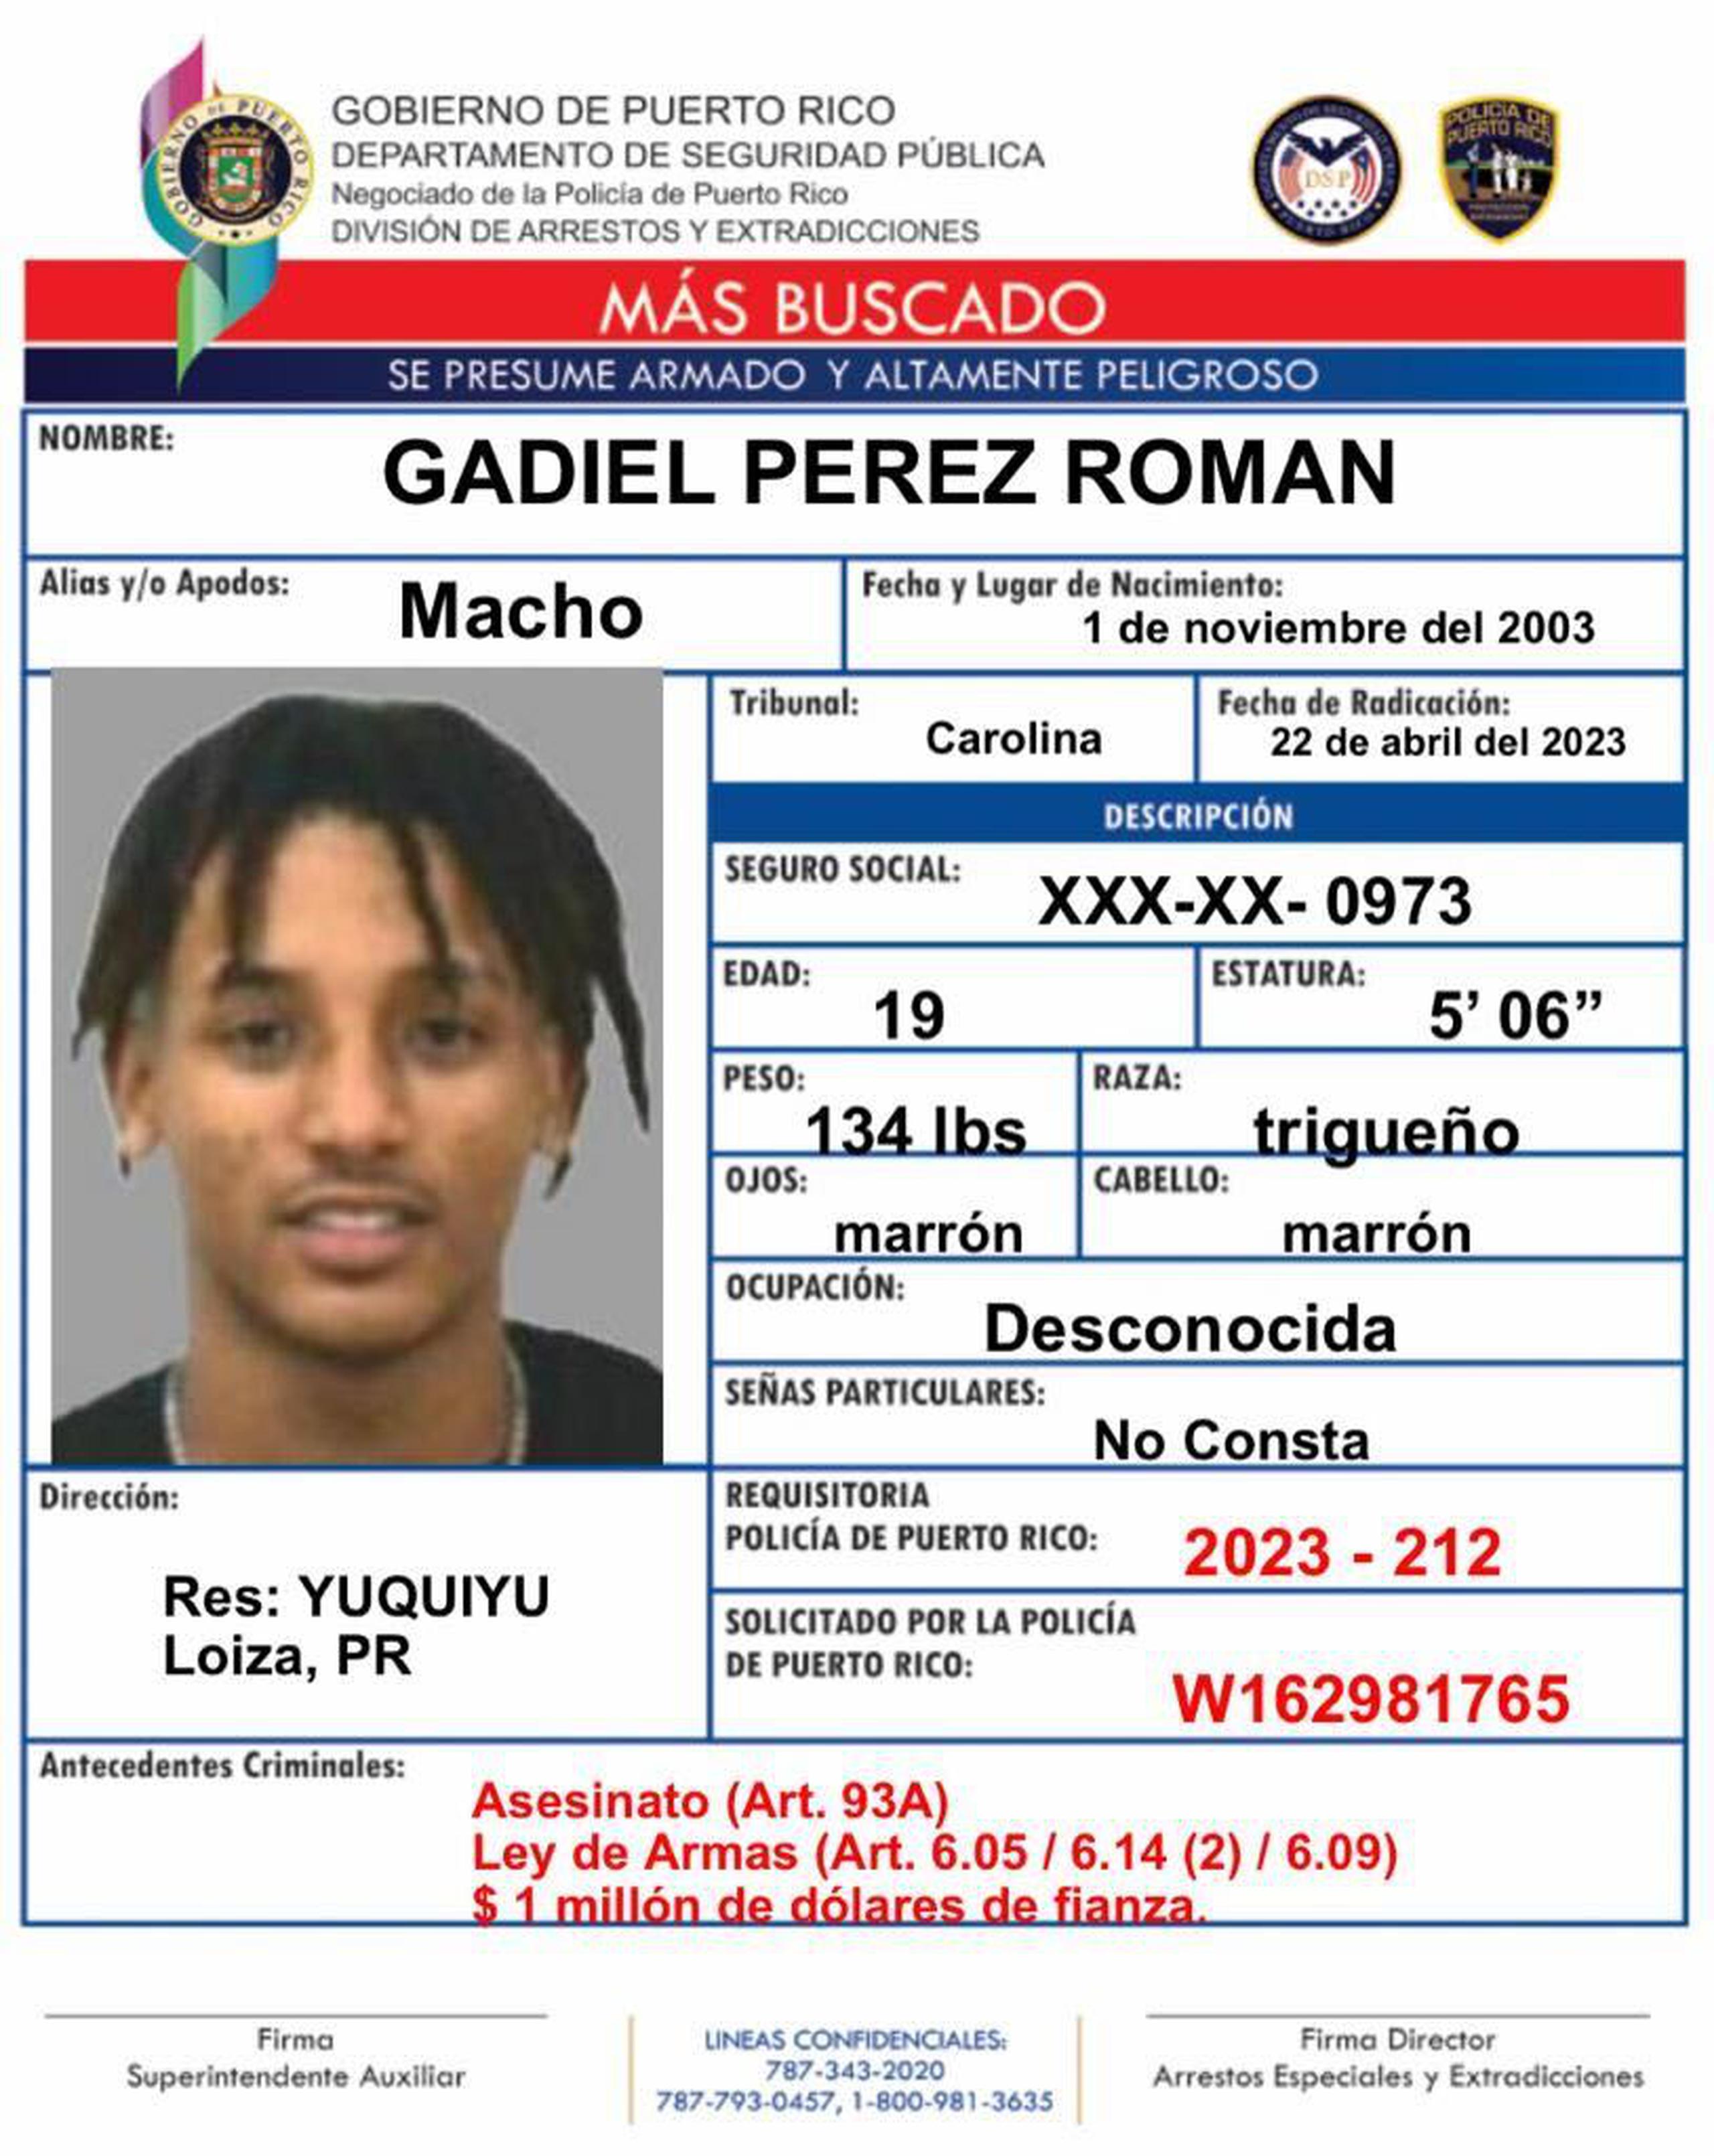 Gadiel Pérez Román